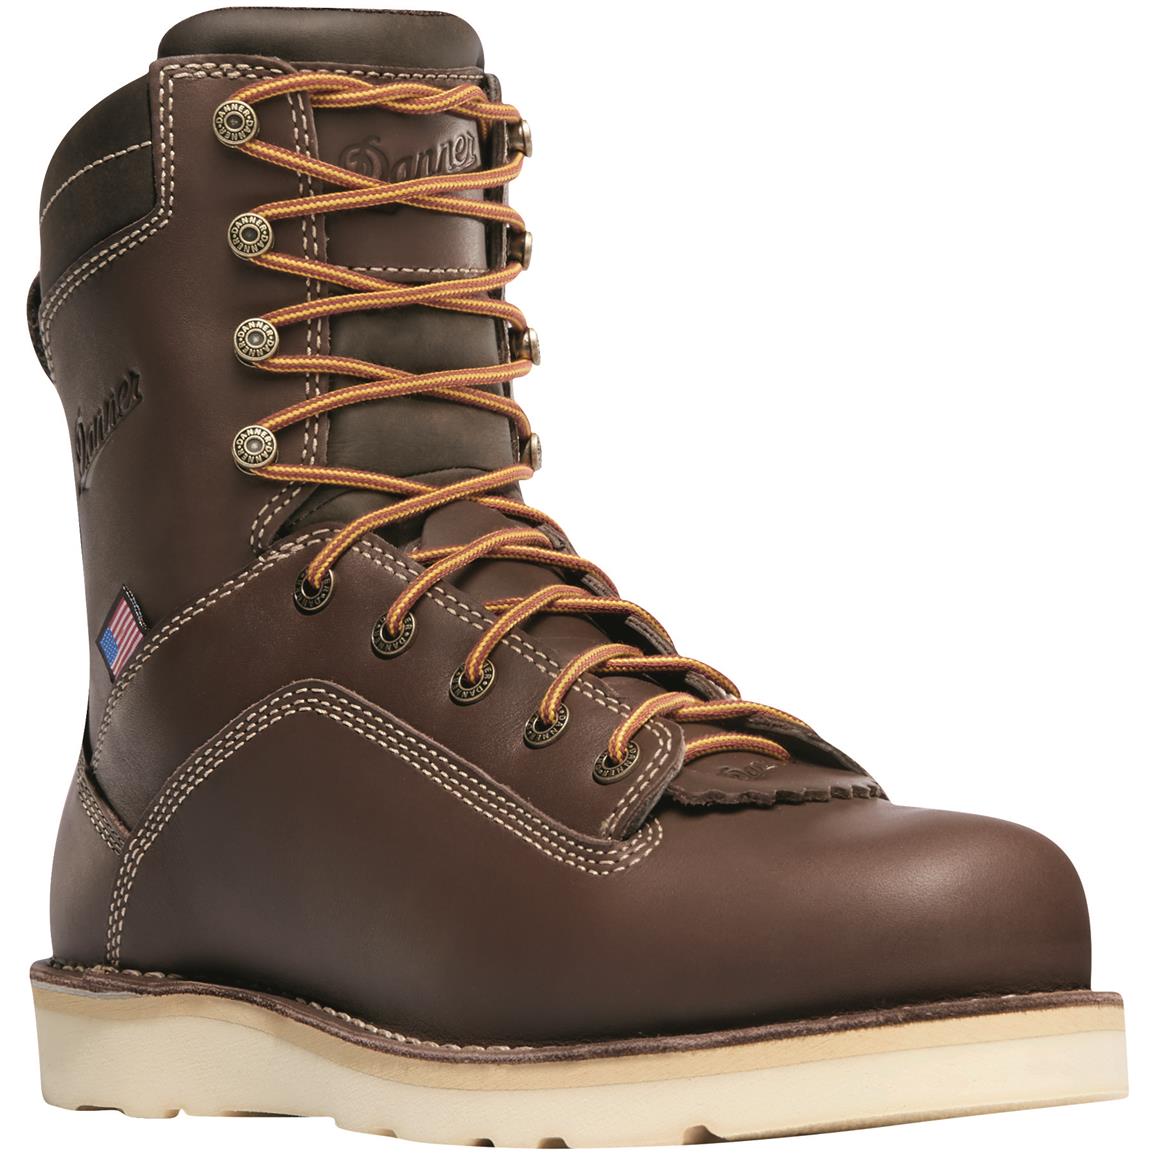 Danner Men's Quarry USA Waterproof 8" Wedge Work Boots, Brown